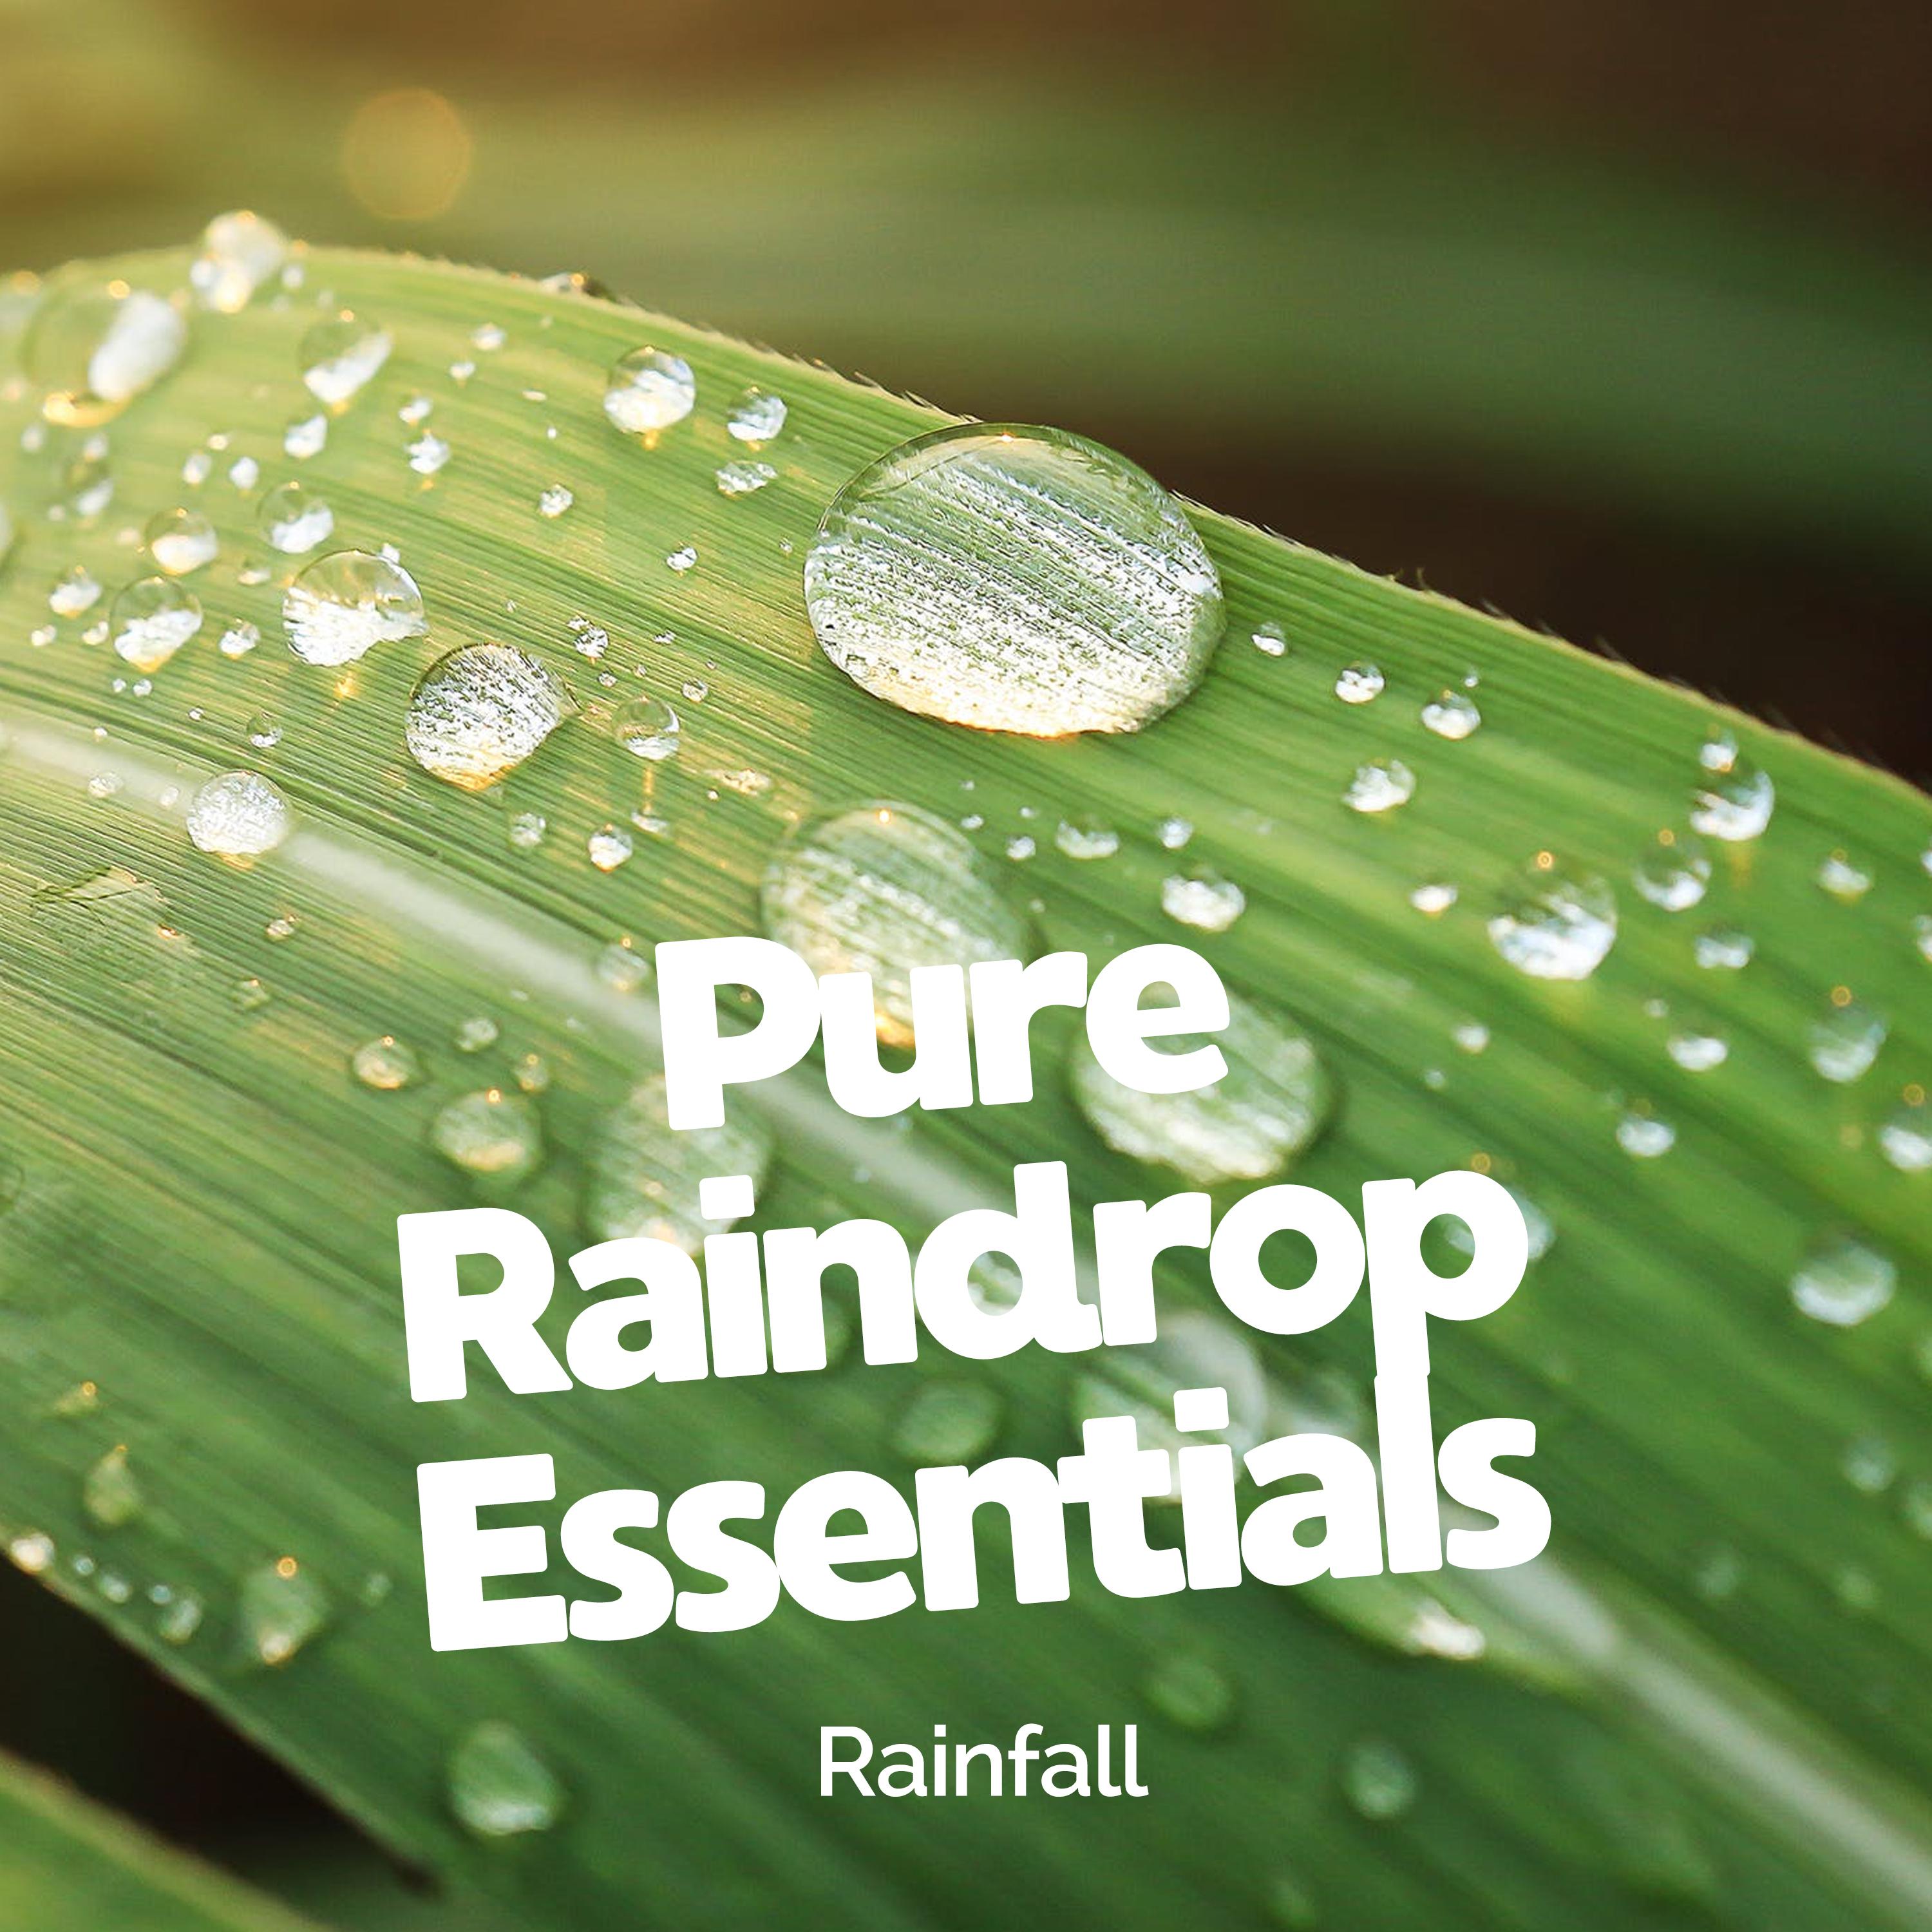 Pure Raindrop Essentials